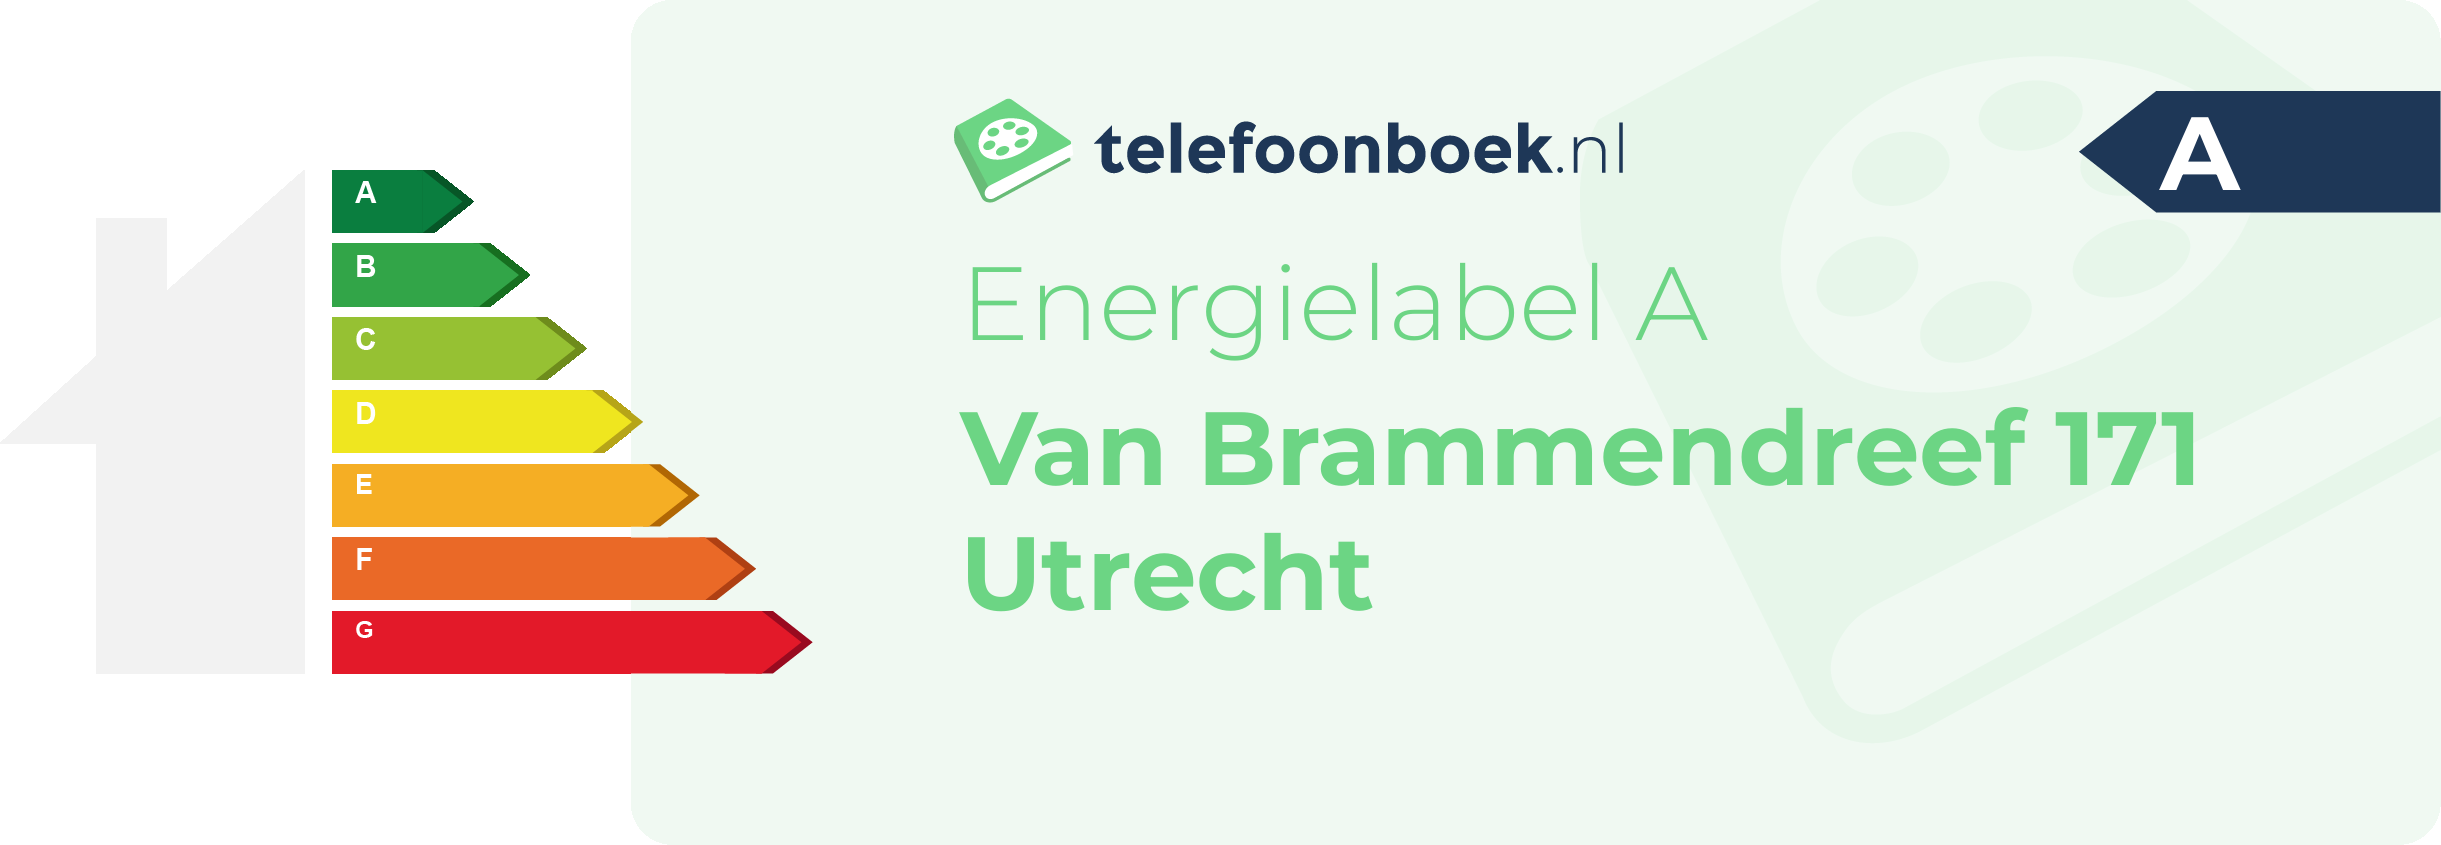 Energielabel Van Brammendreef 171 Utrecht